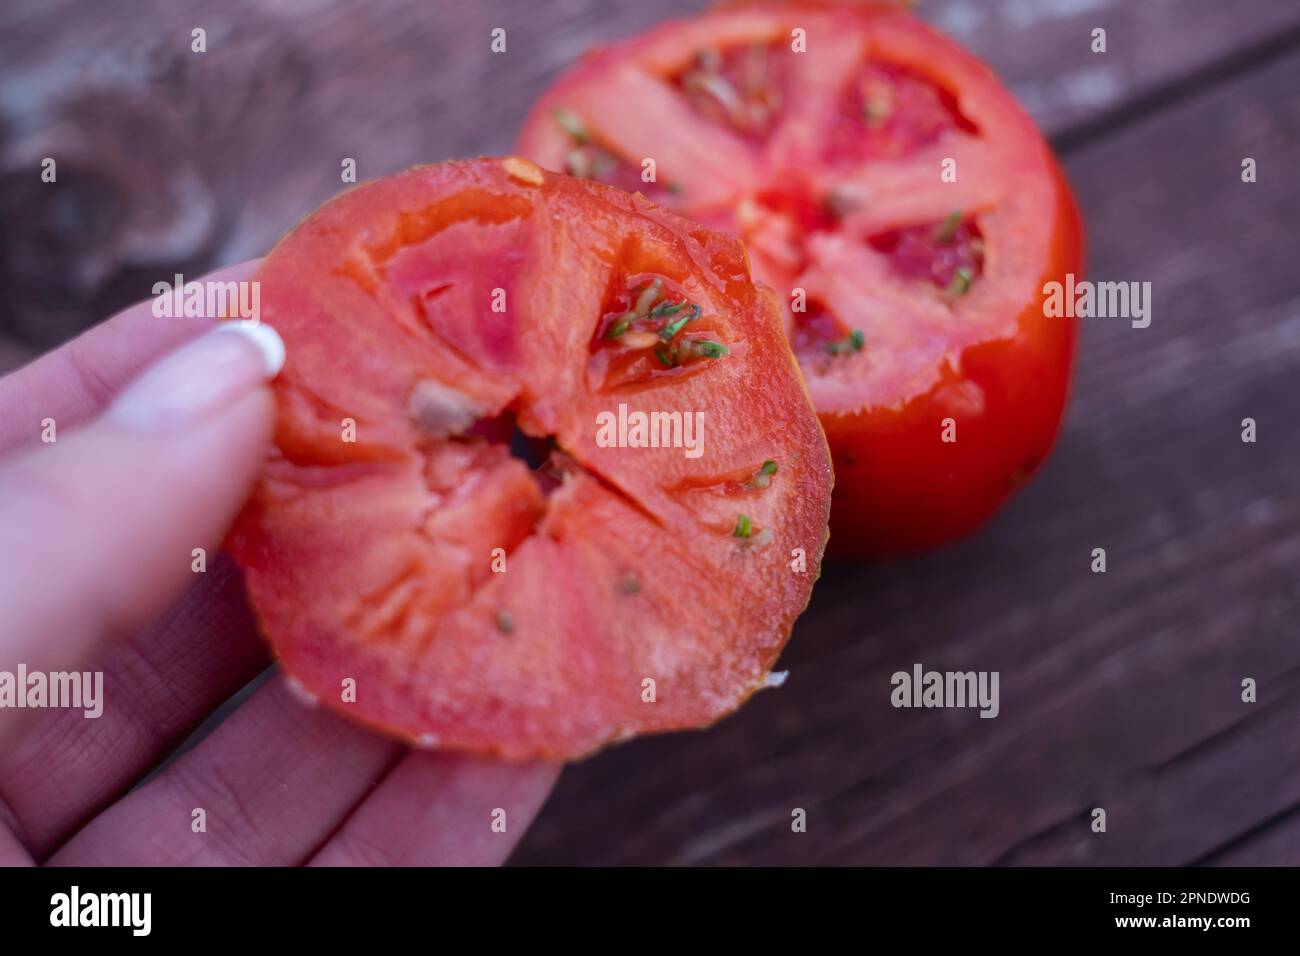 Des graines de tomate germent à l'intérieur d'une tomate mûre. Banque D'Images